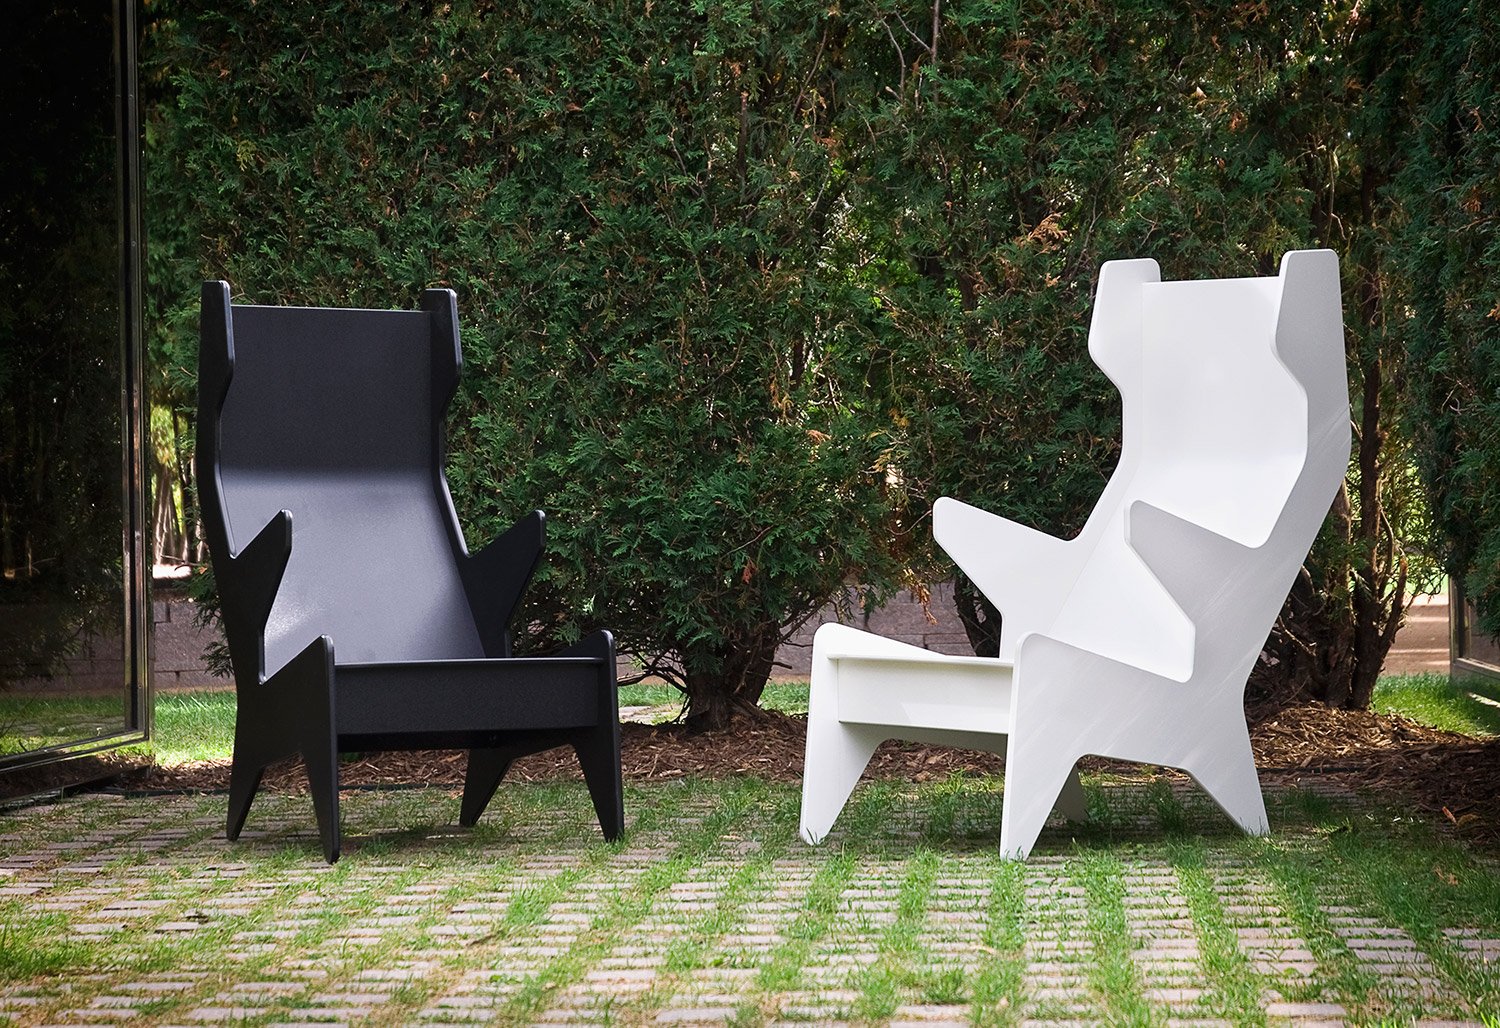 sculpture gardens loll chair